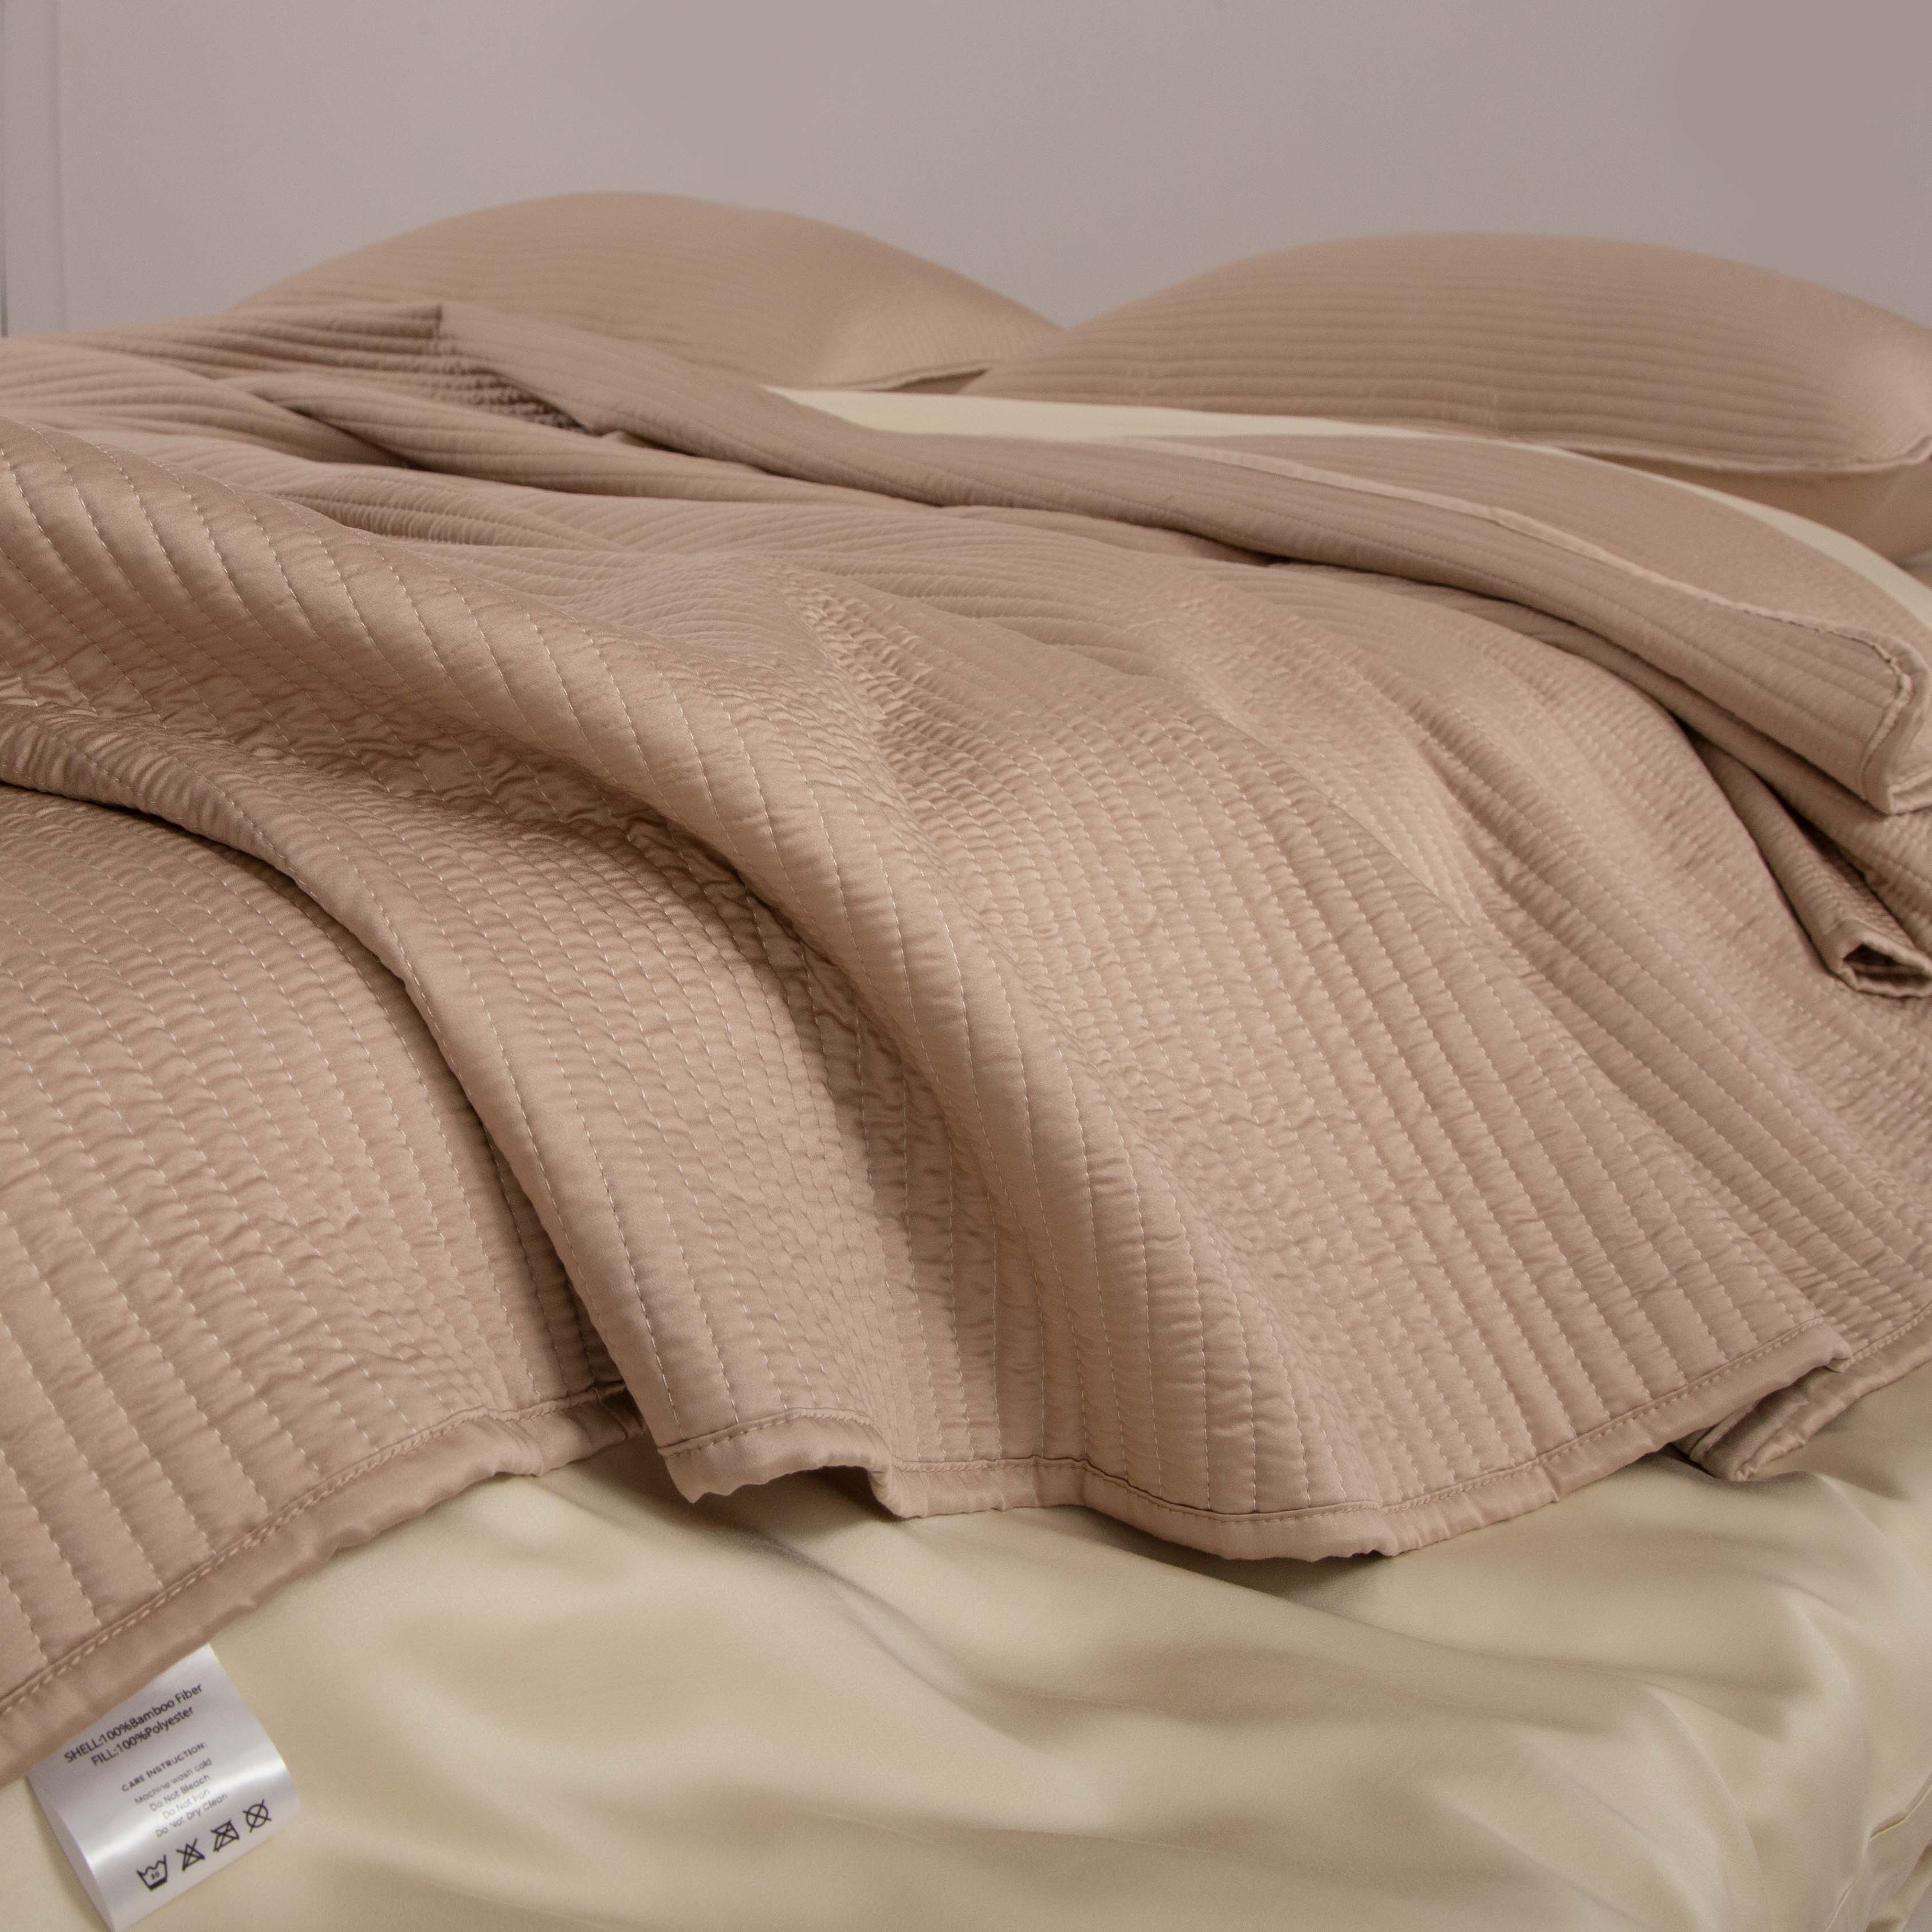 Slashop Has the Best Fur-Resistant Bedding for Pet Parents · The